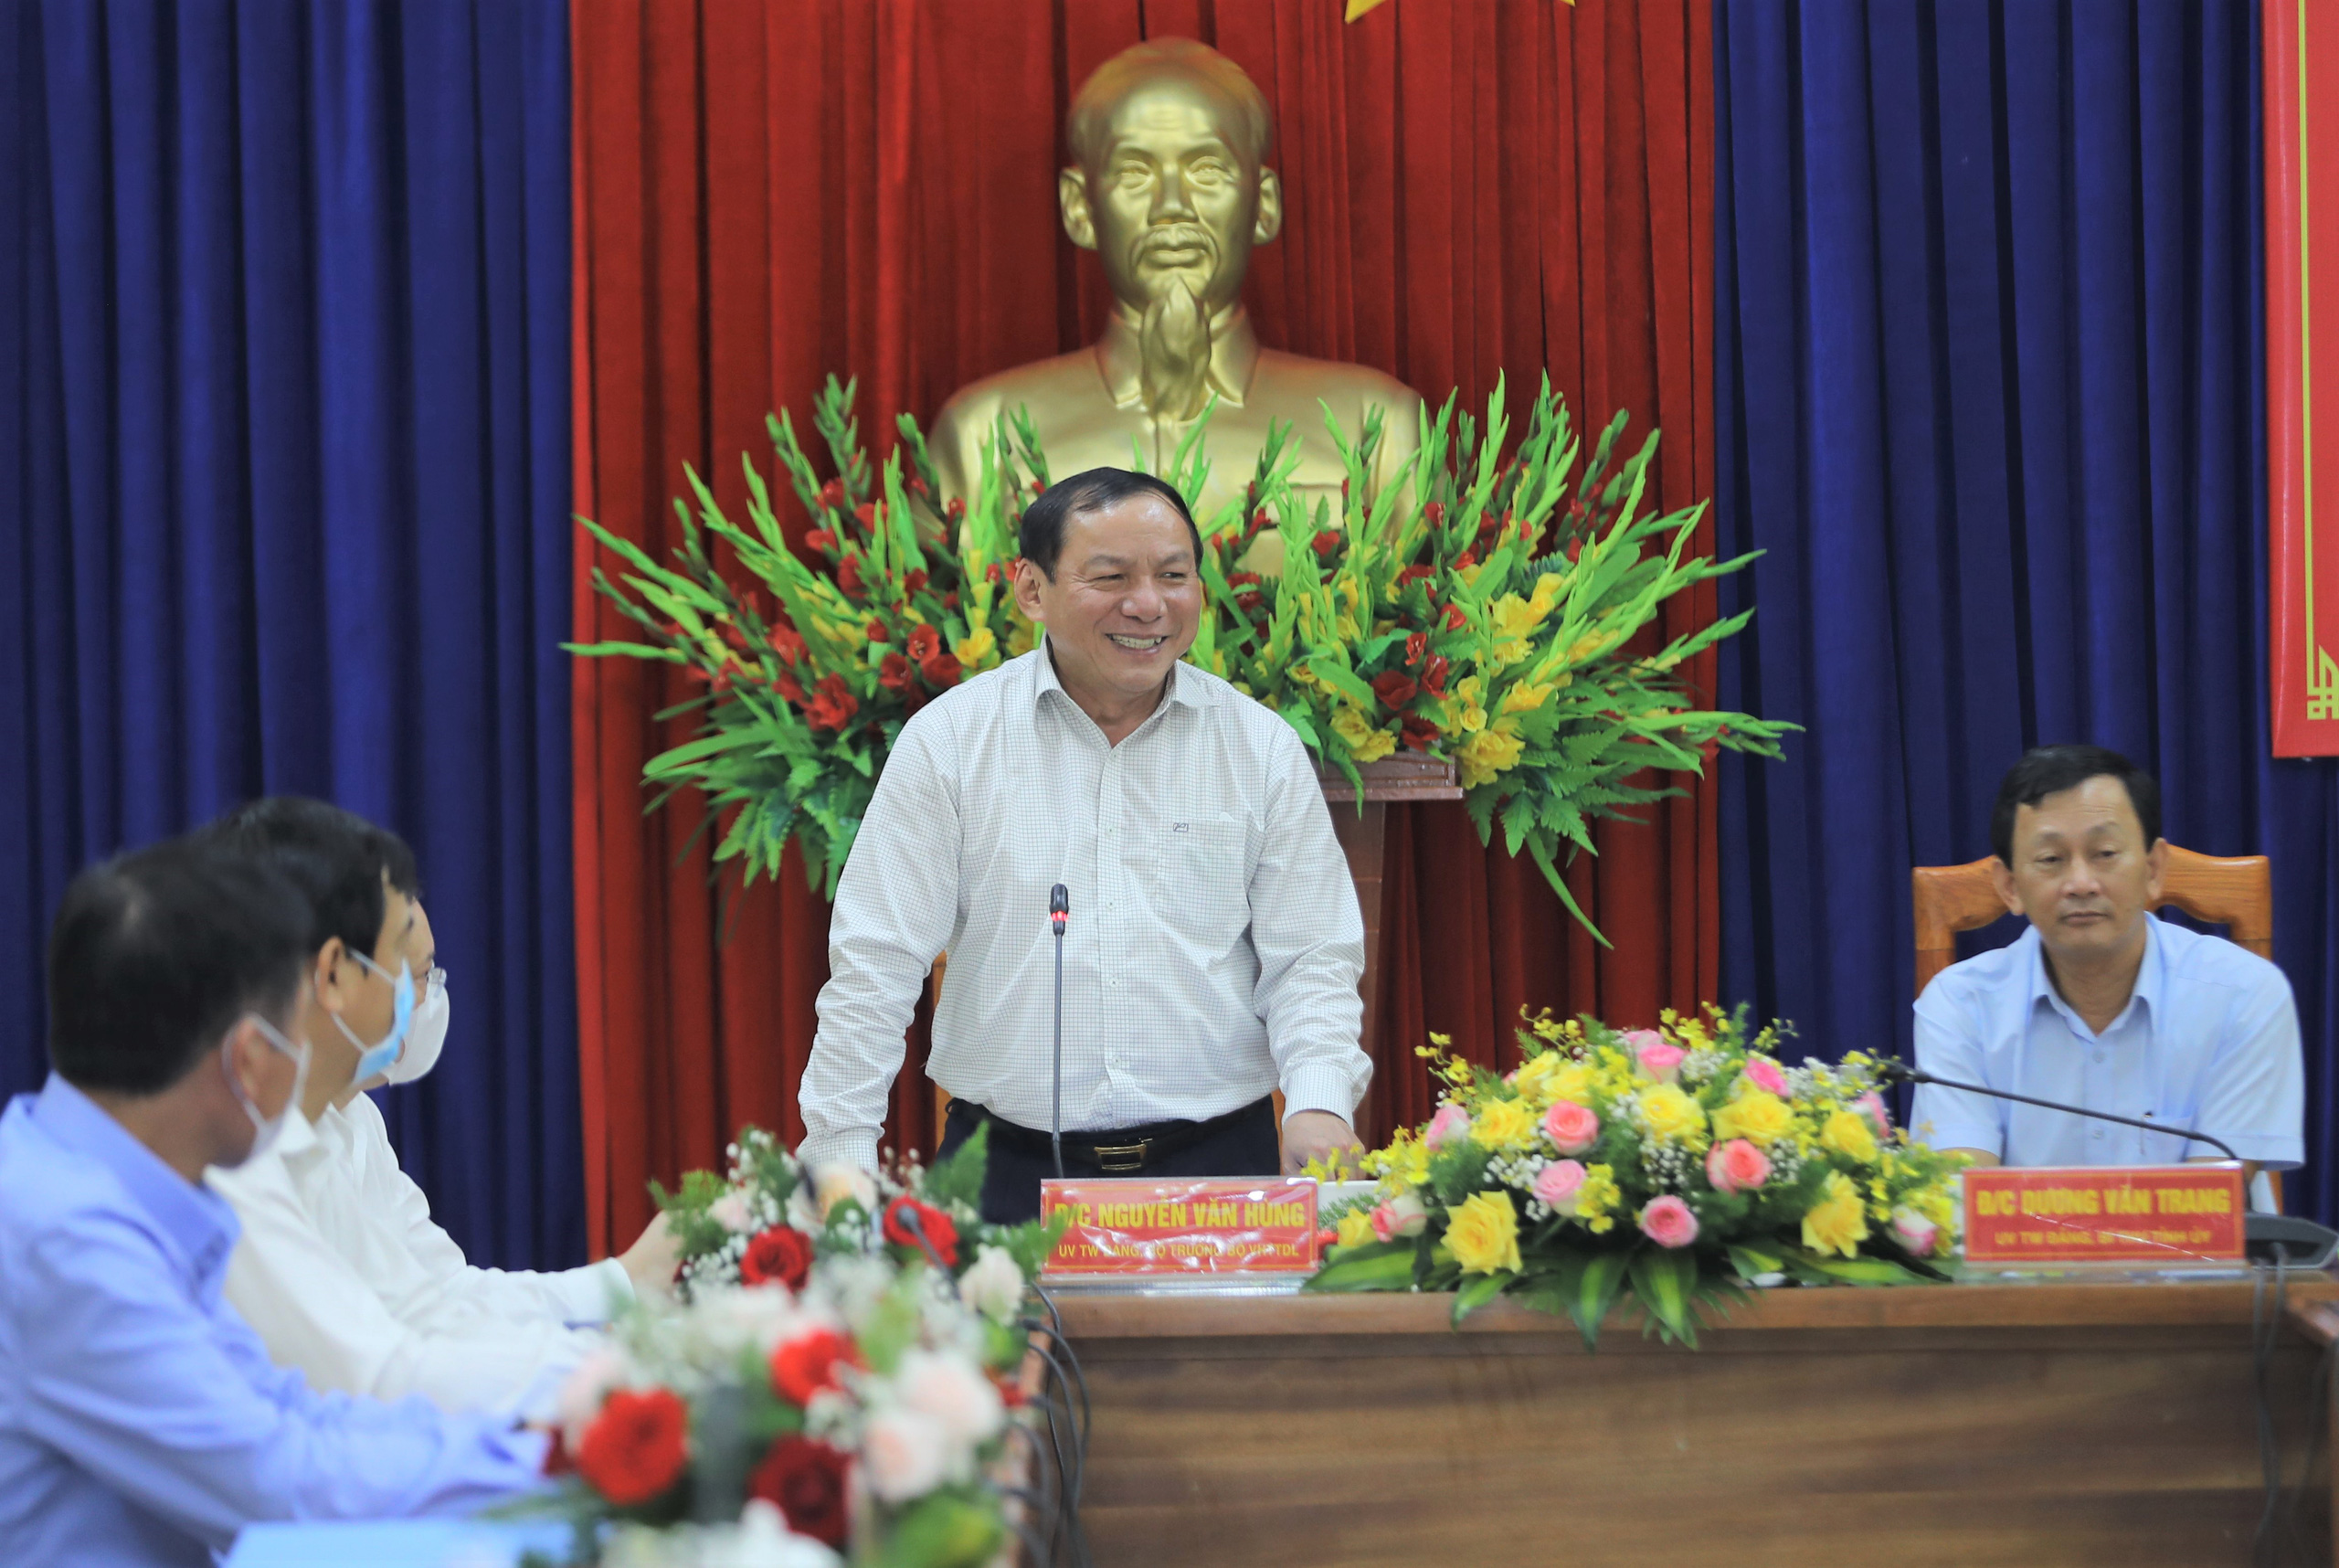 Bộ trưởng Nguyễn Văn Hùng: “Kon Tum có quang cảnh đẹp, sao không mạnh dạn đặt ước mơ trở thành trung tâm hội nghị của khu vực miền Trung-Tây Nguyên